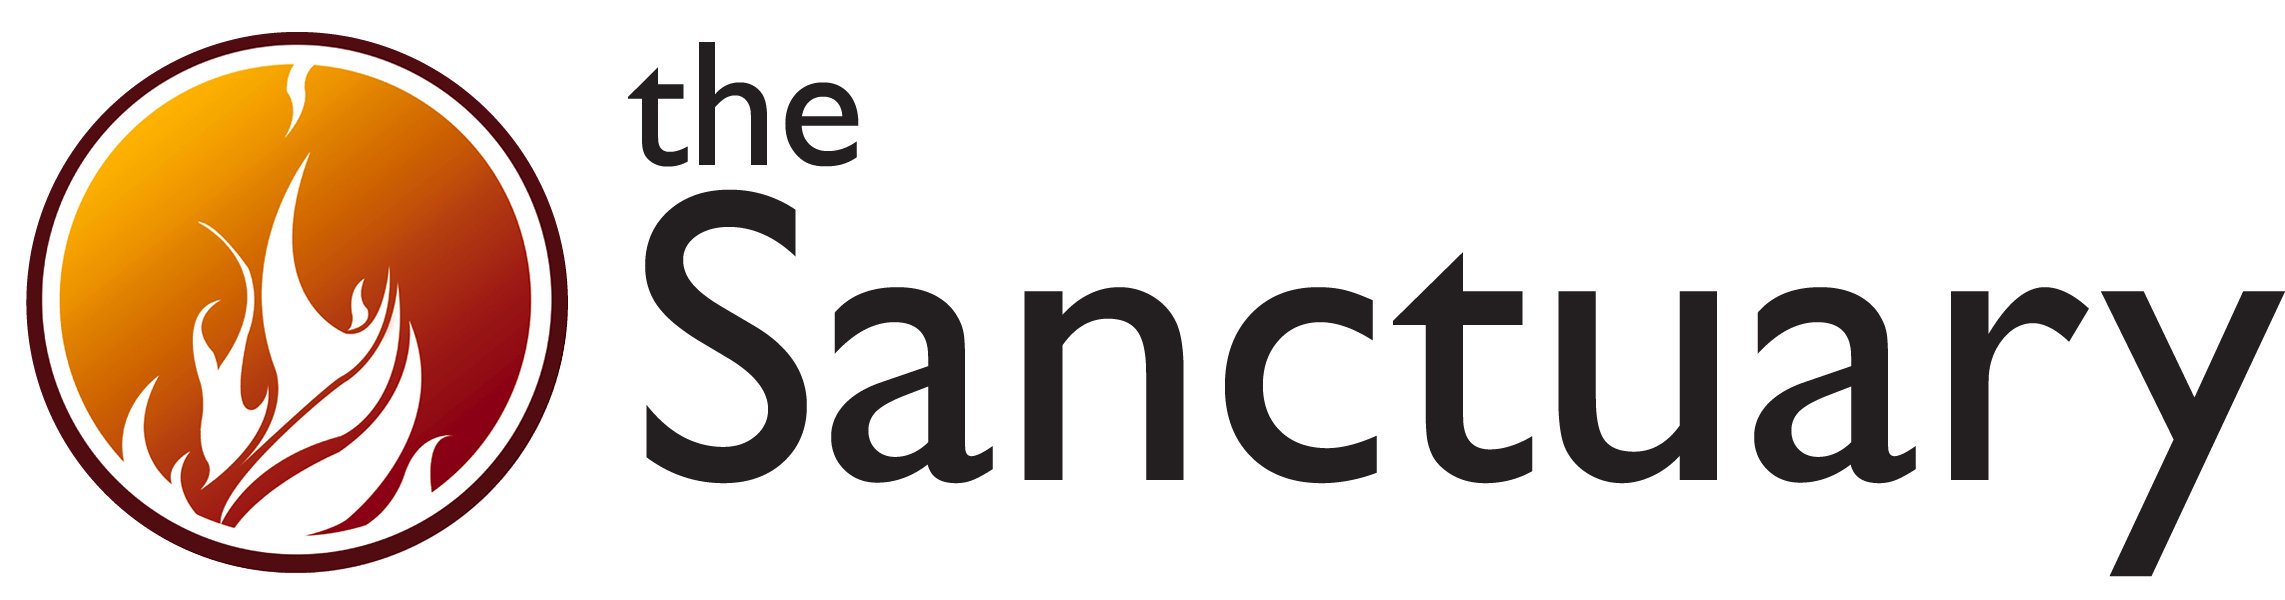 Sanctuary Logo - The Sanctuary